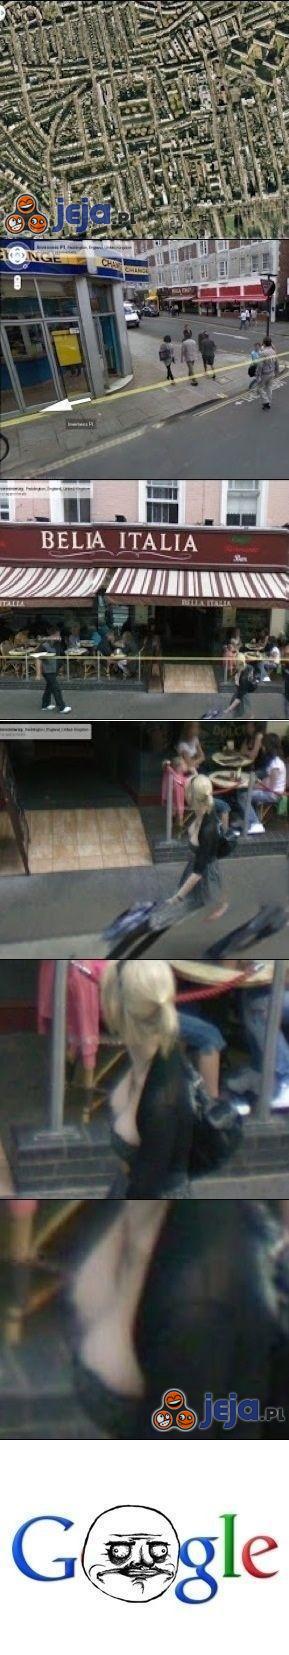 Google Earth - w poszukiwaniu cycków...